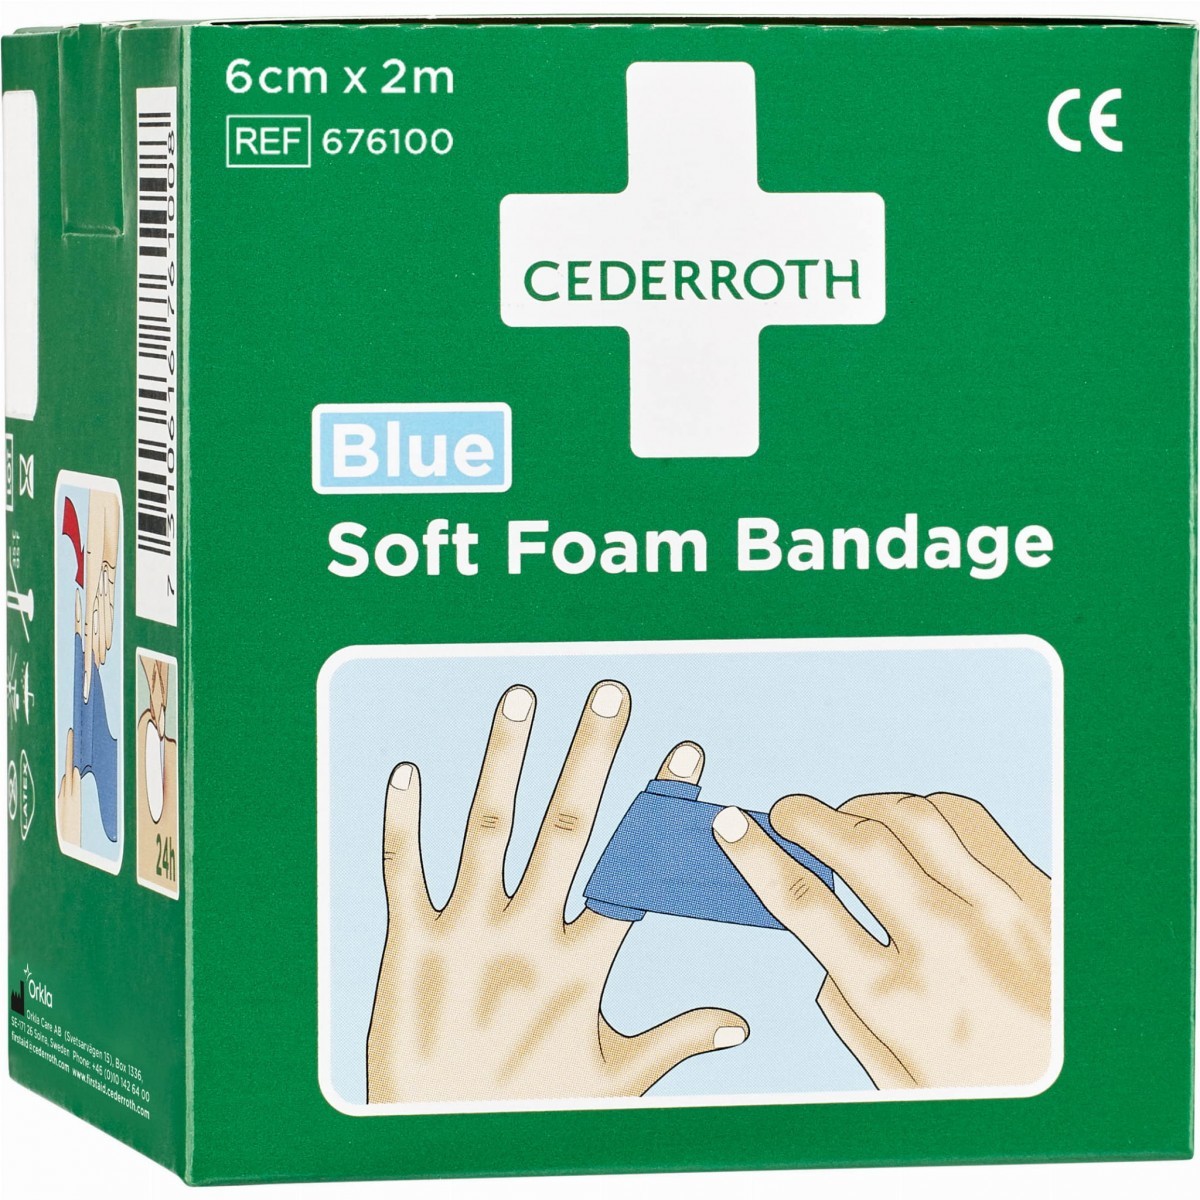 Cederroth Soft Foam Bandage Blue 676100